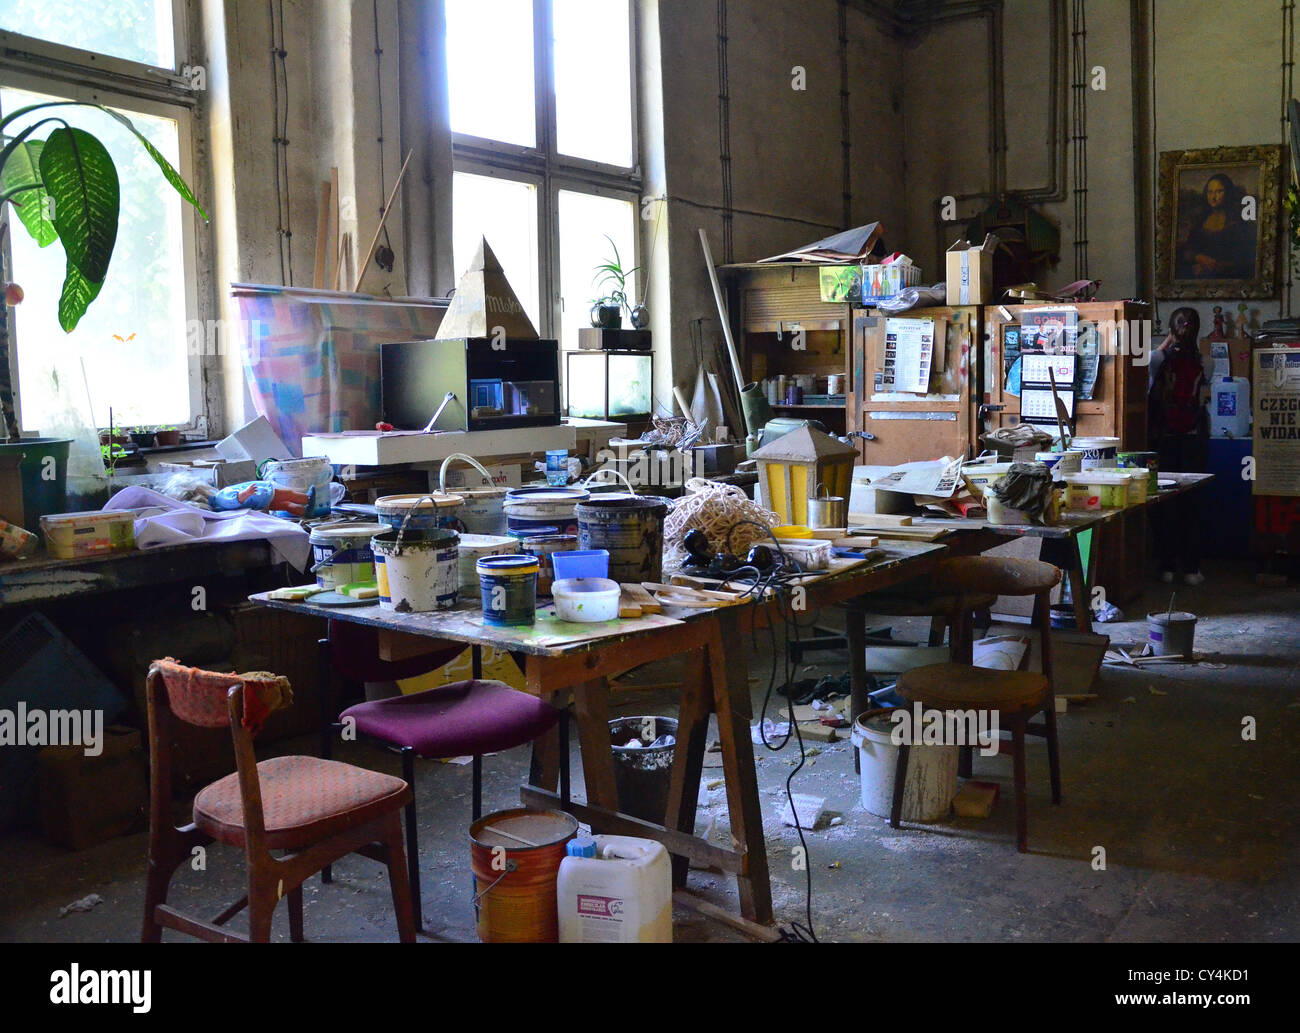 Atelier art studio theatre mess table méli le désordre Banque D'Images